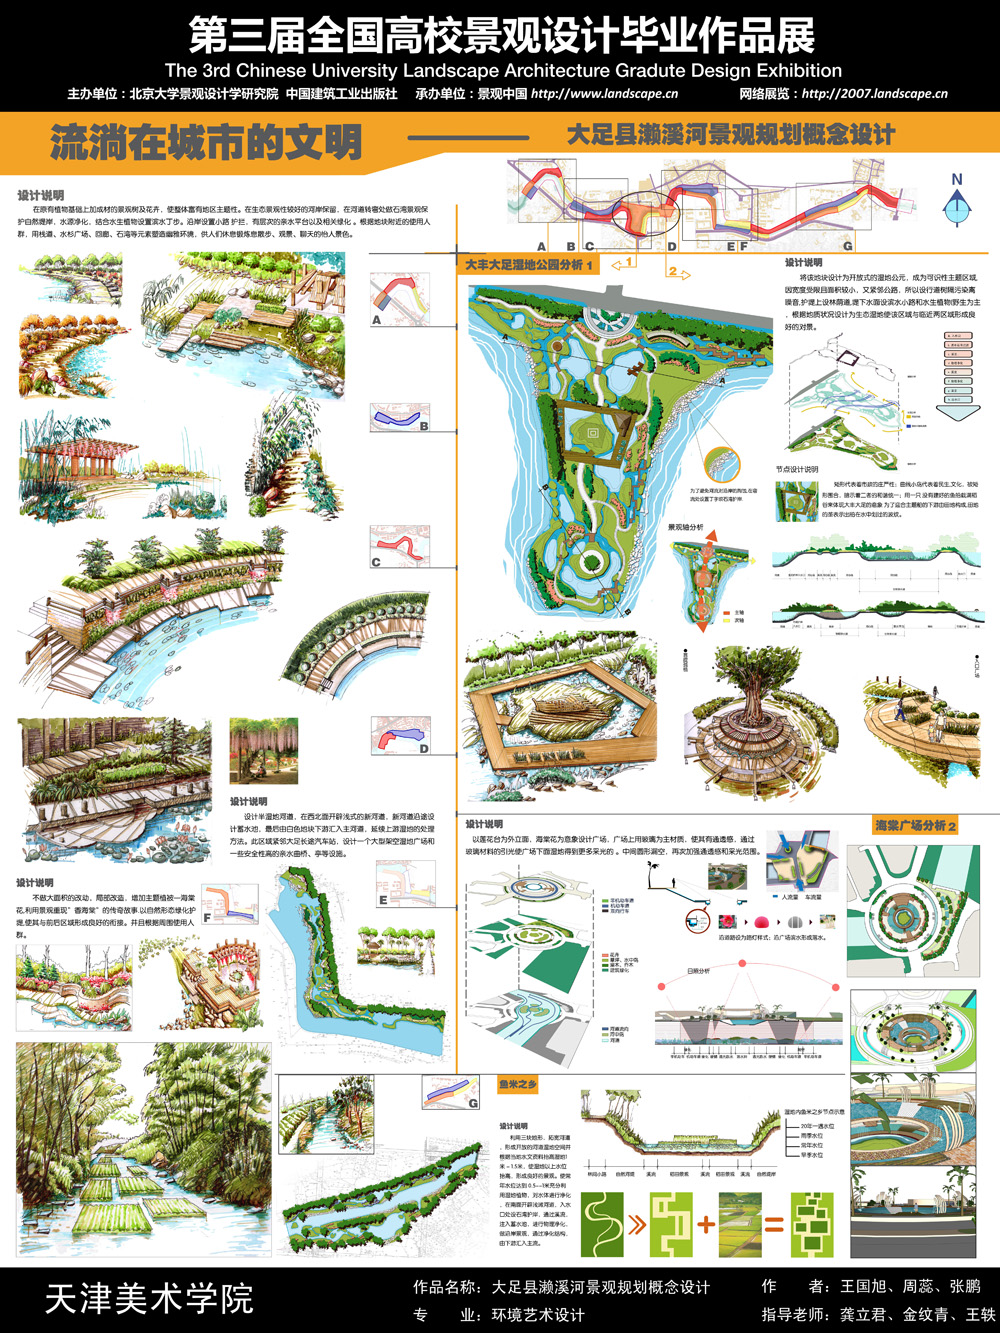 大足县濑溪河景观规划概念设计-2